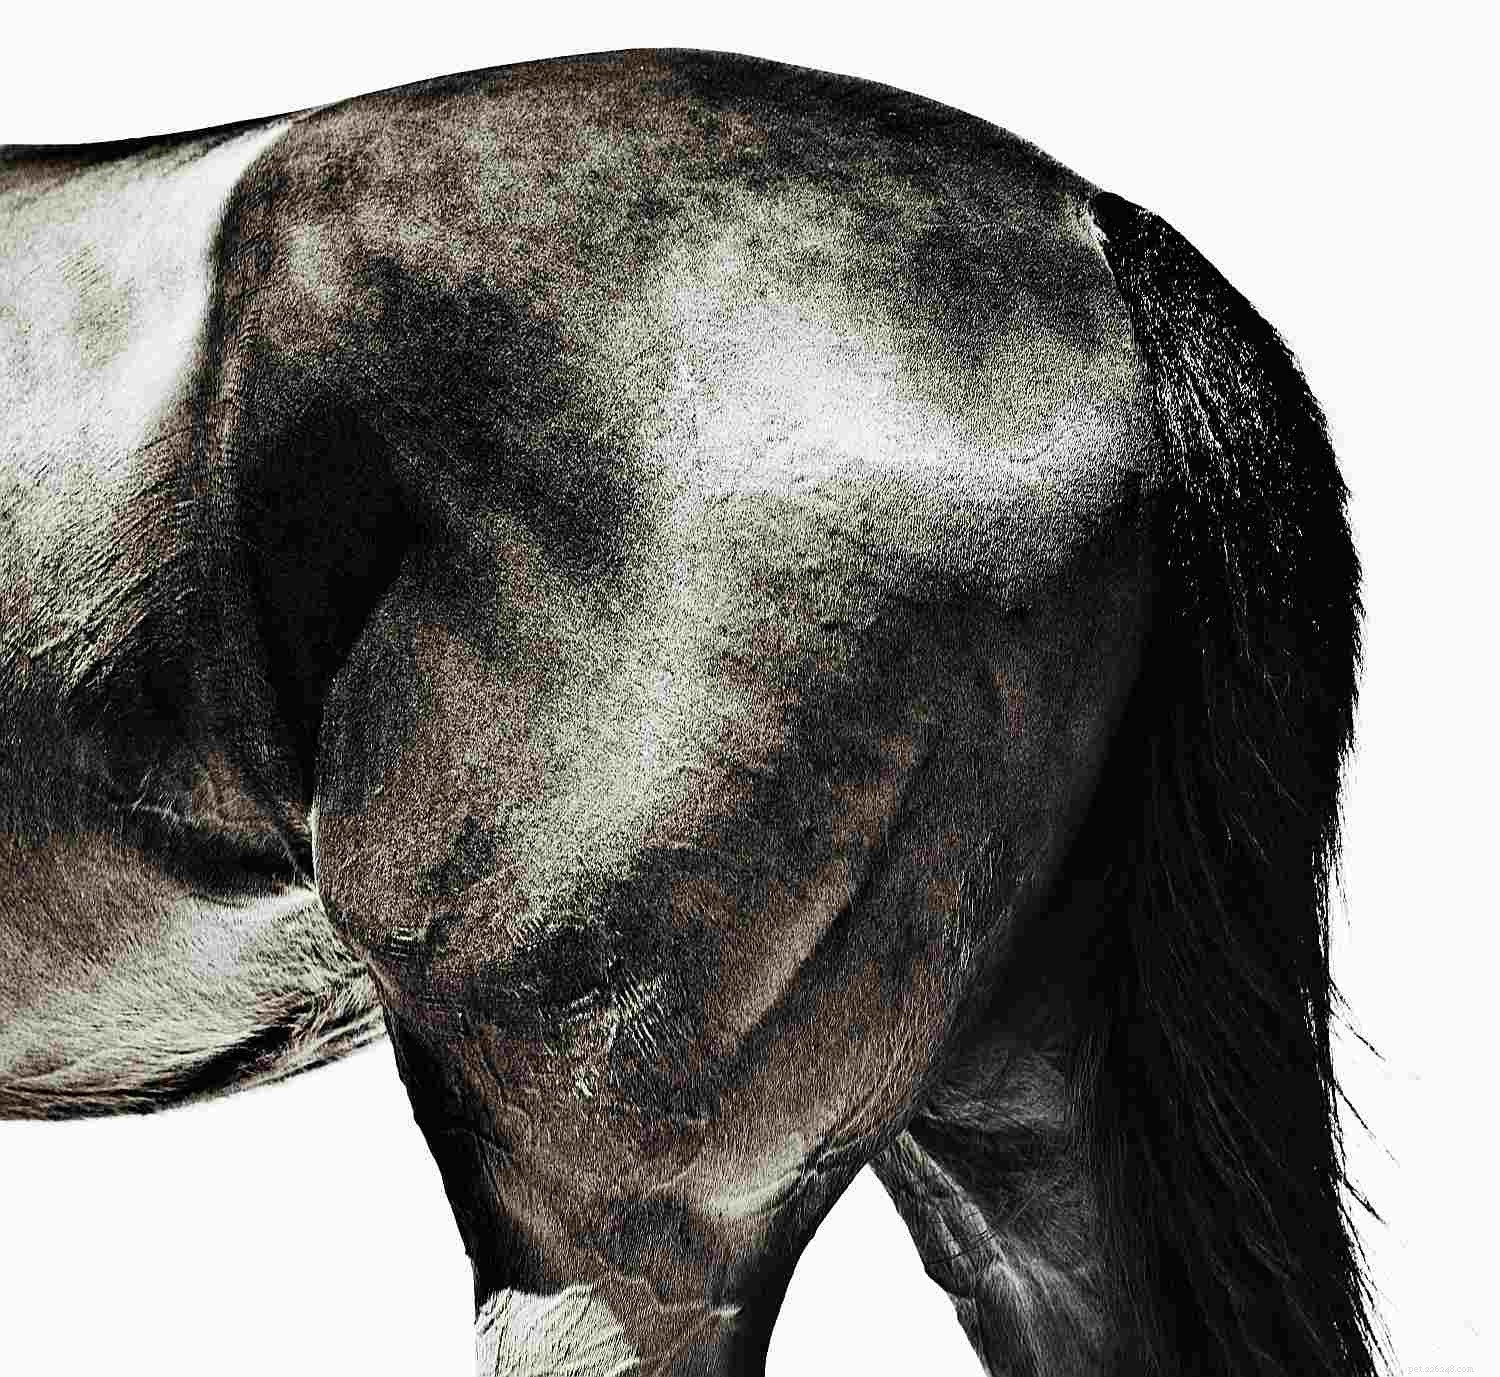 馬のさまざまな部分への画像ガイド 